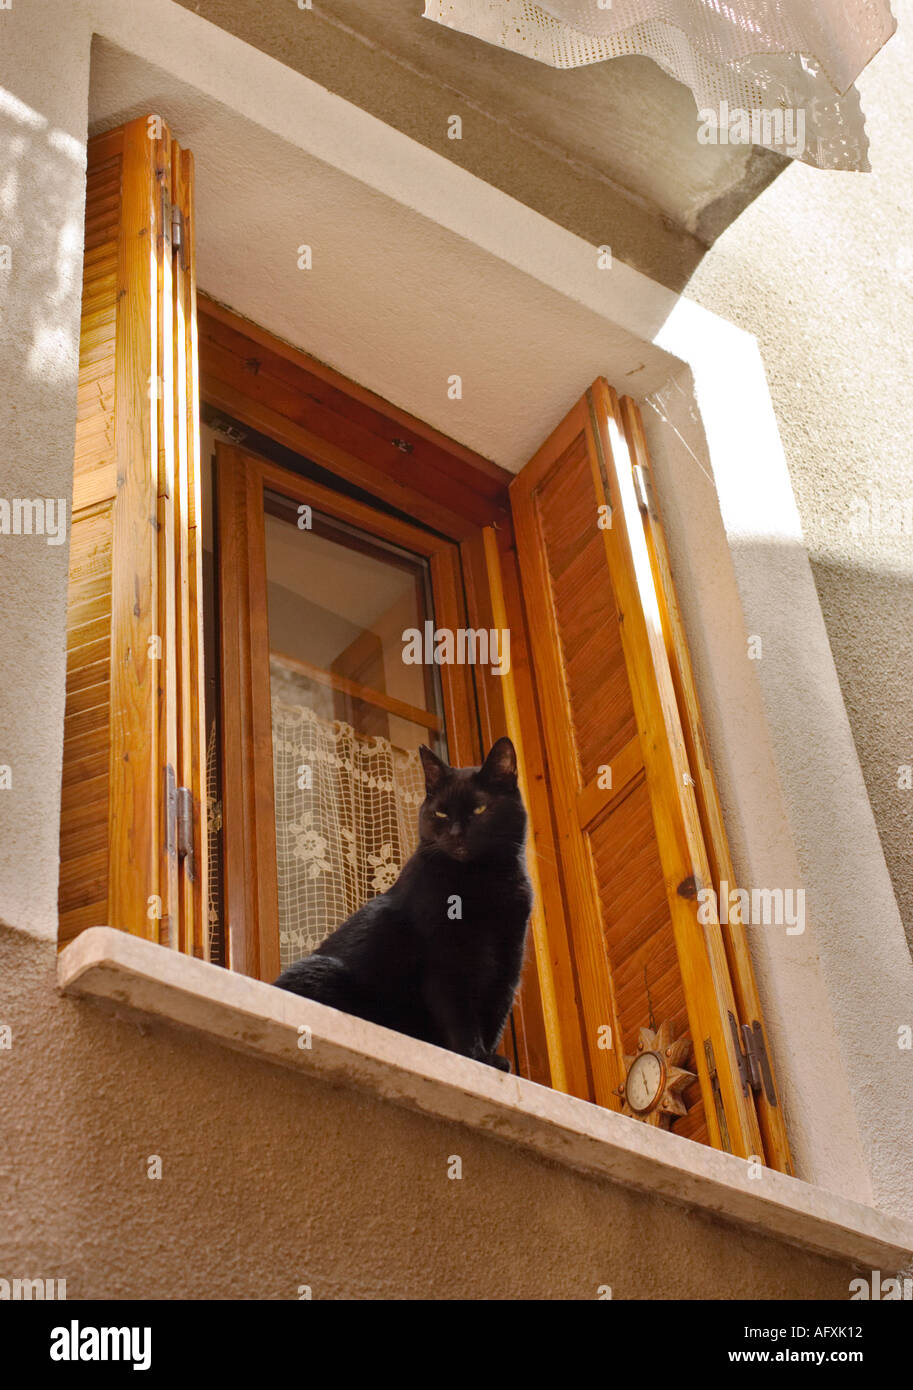 Chat noir assis sur le rebord de la maison avec des volets à la fenêtre dans le sud de la France Banque D'Images